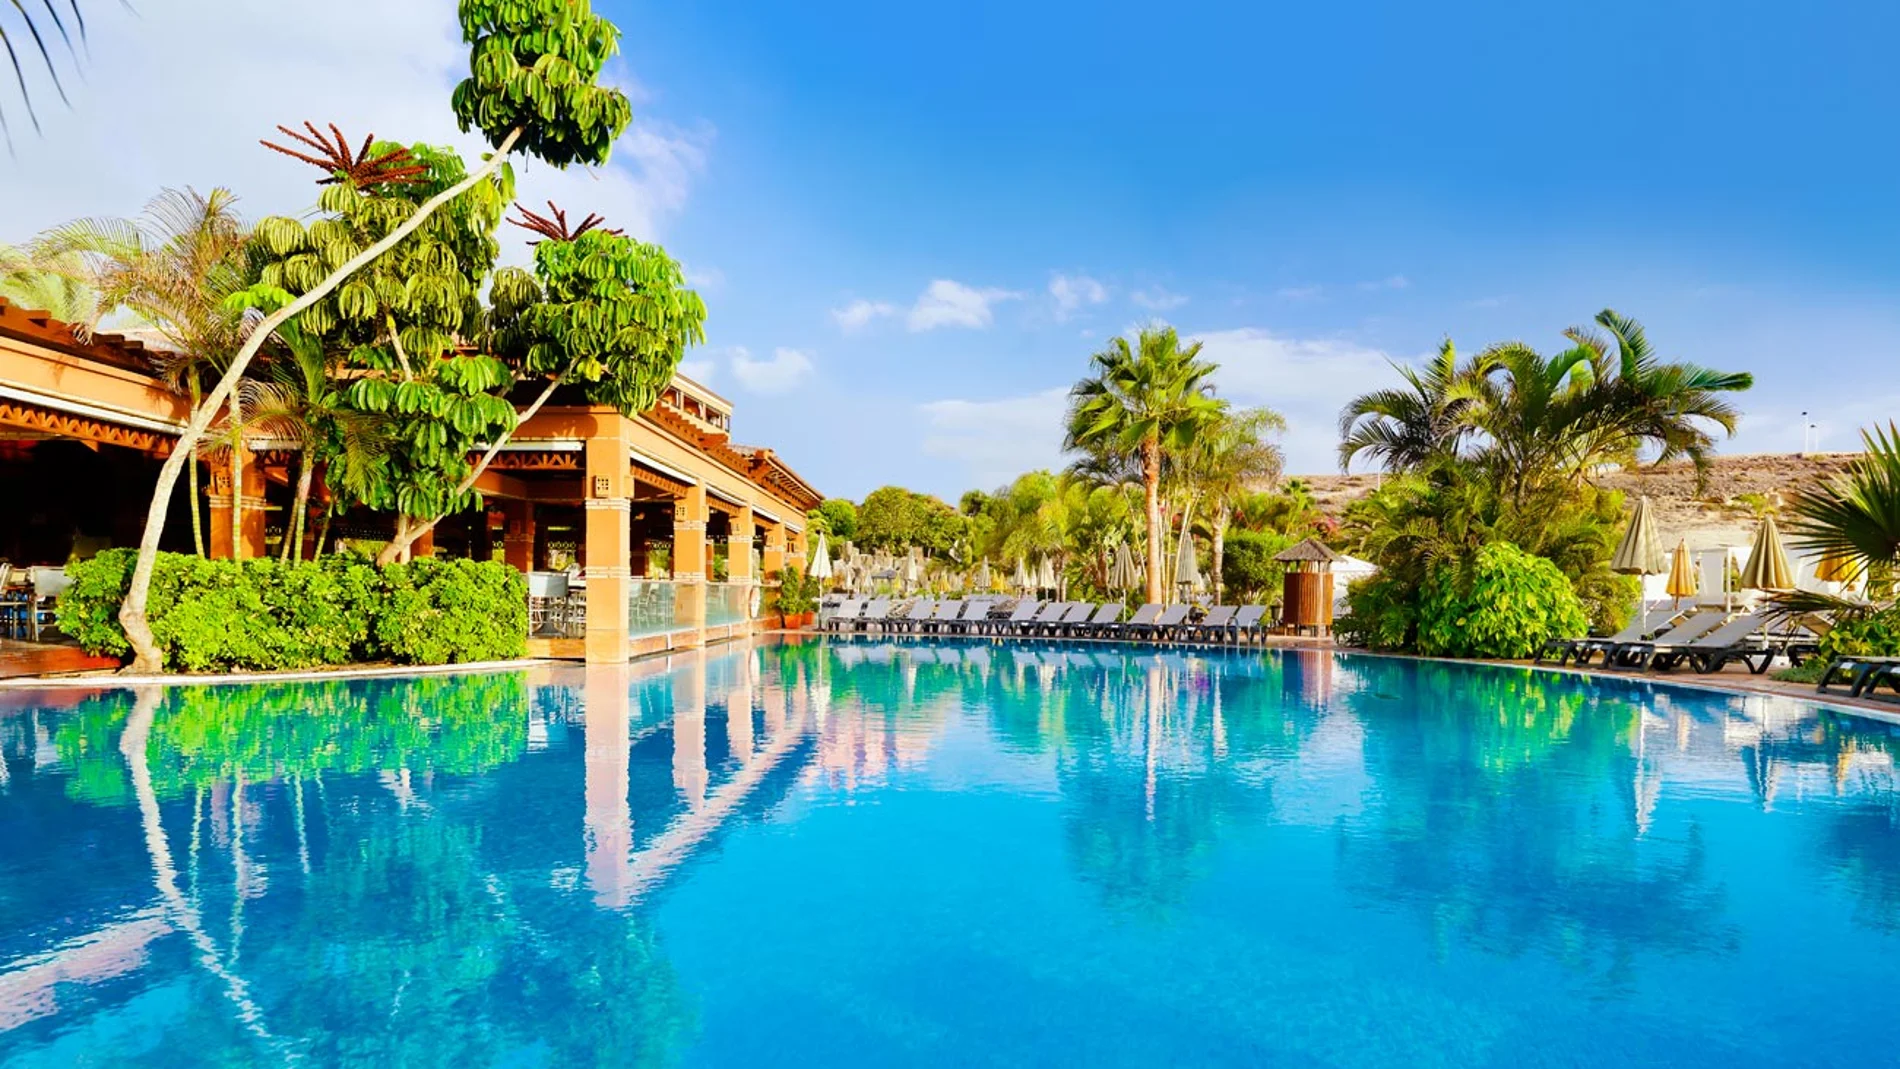 Vista de una de las piscinas del Hotel H10 Costa Adeje Palace